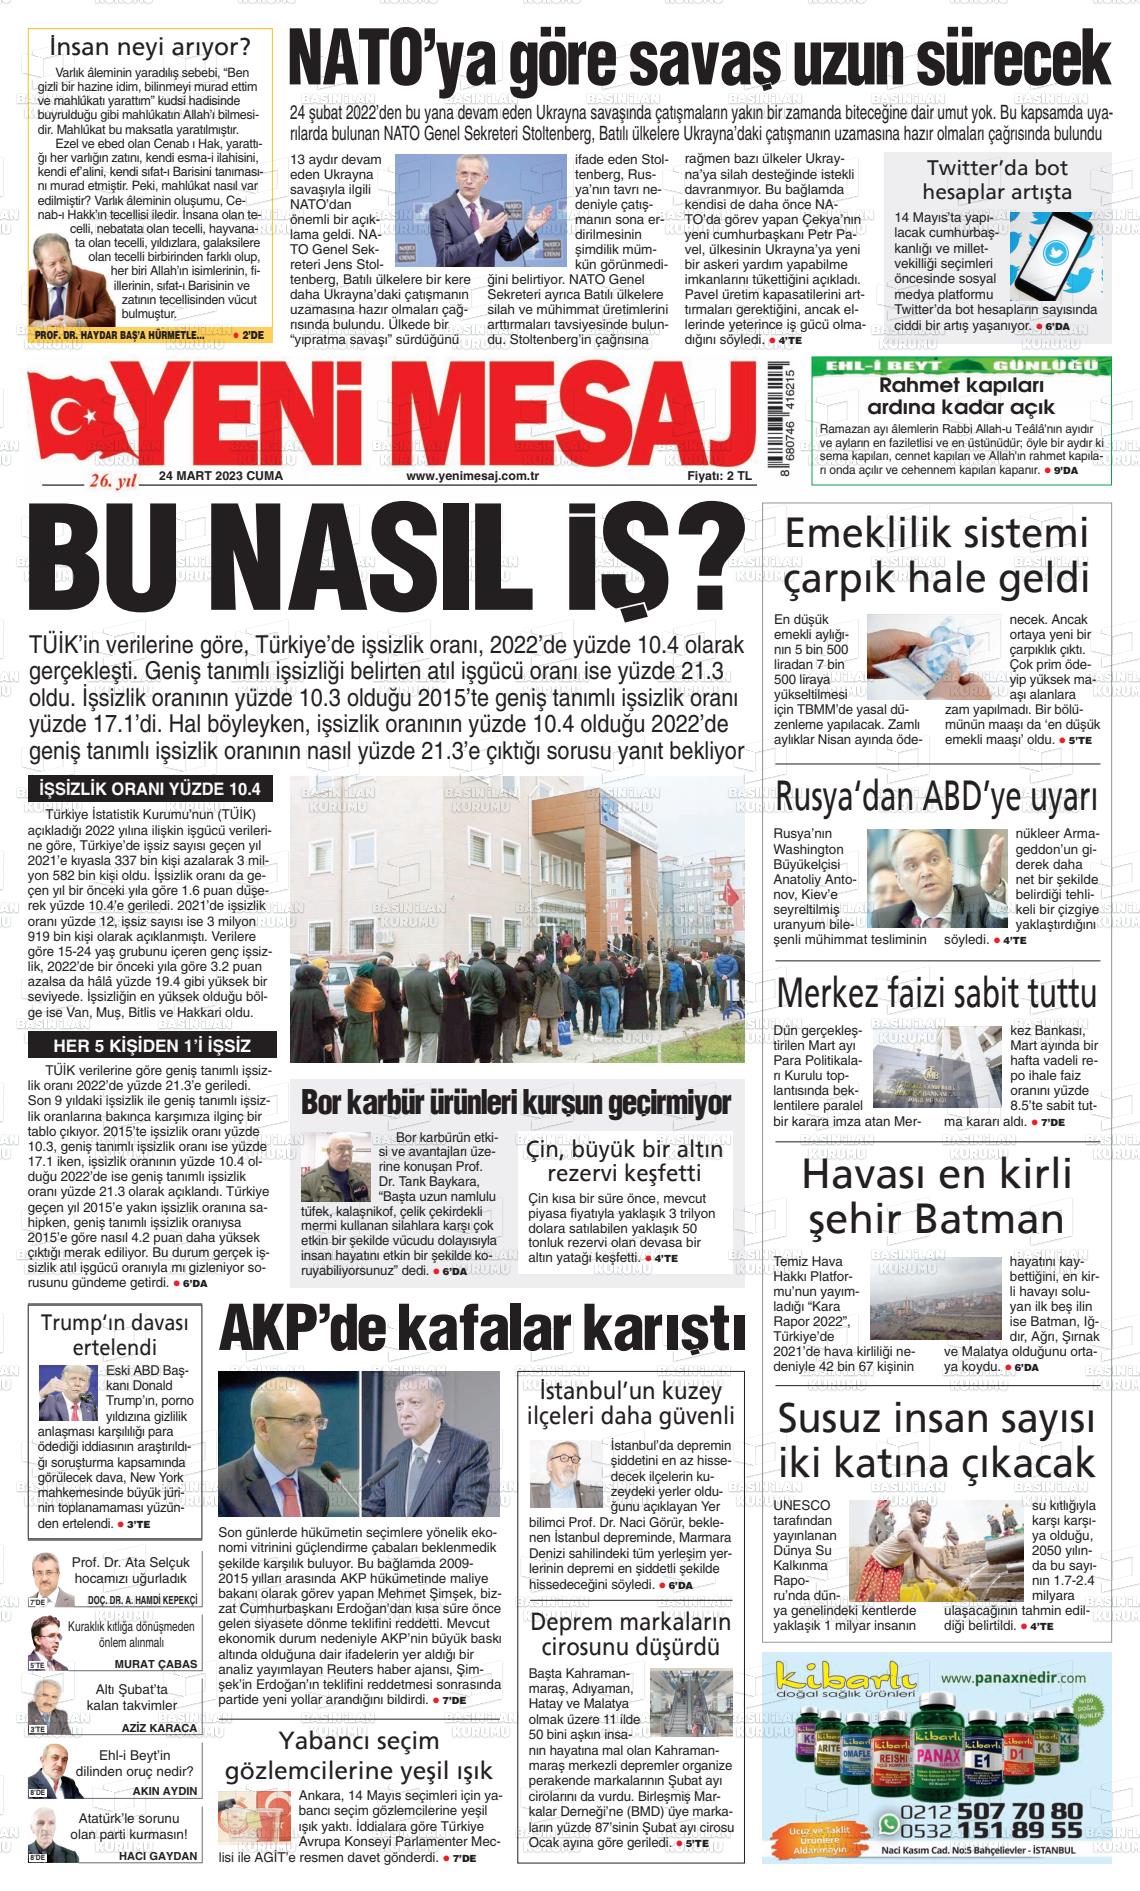 24 Mart 2023 Yeni Mesaj Gazete Manşeti